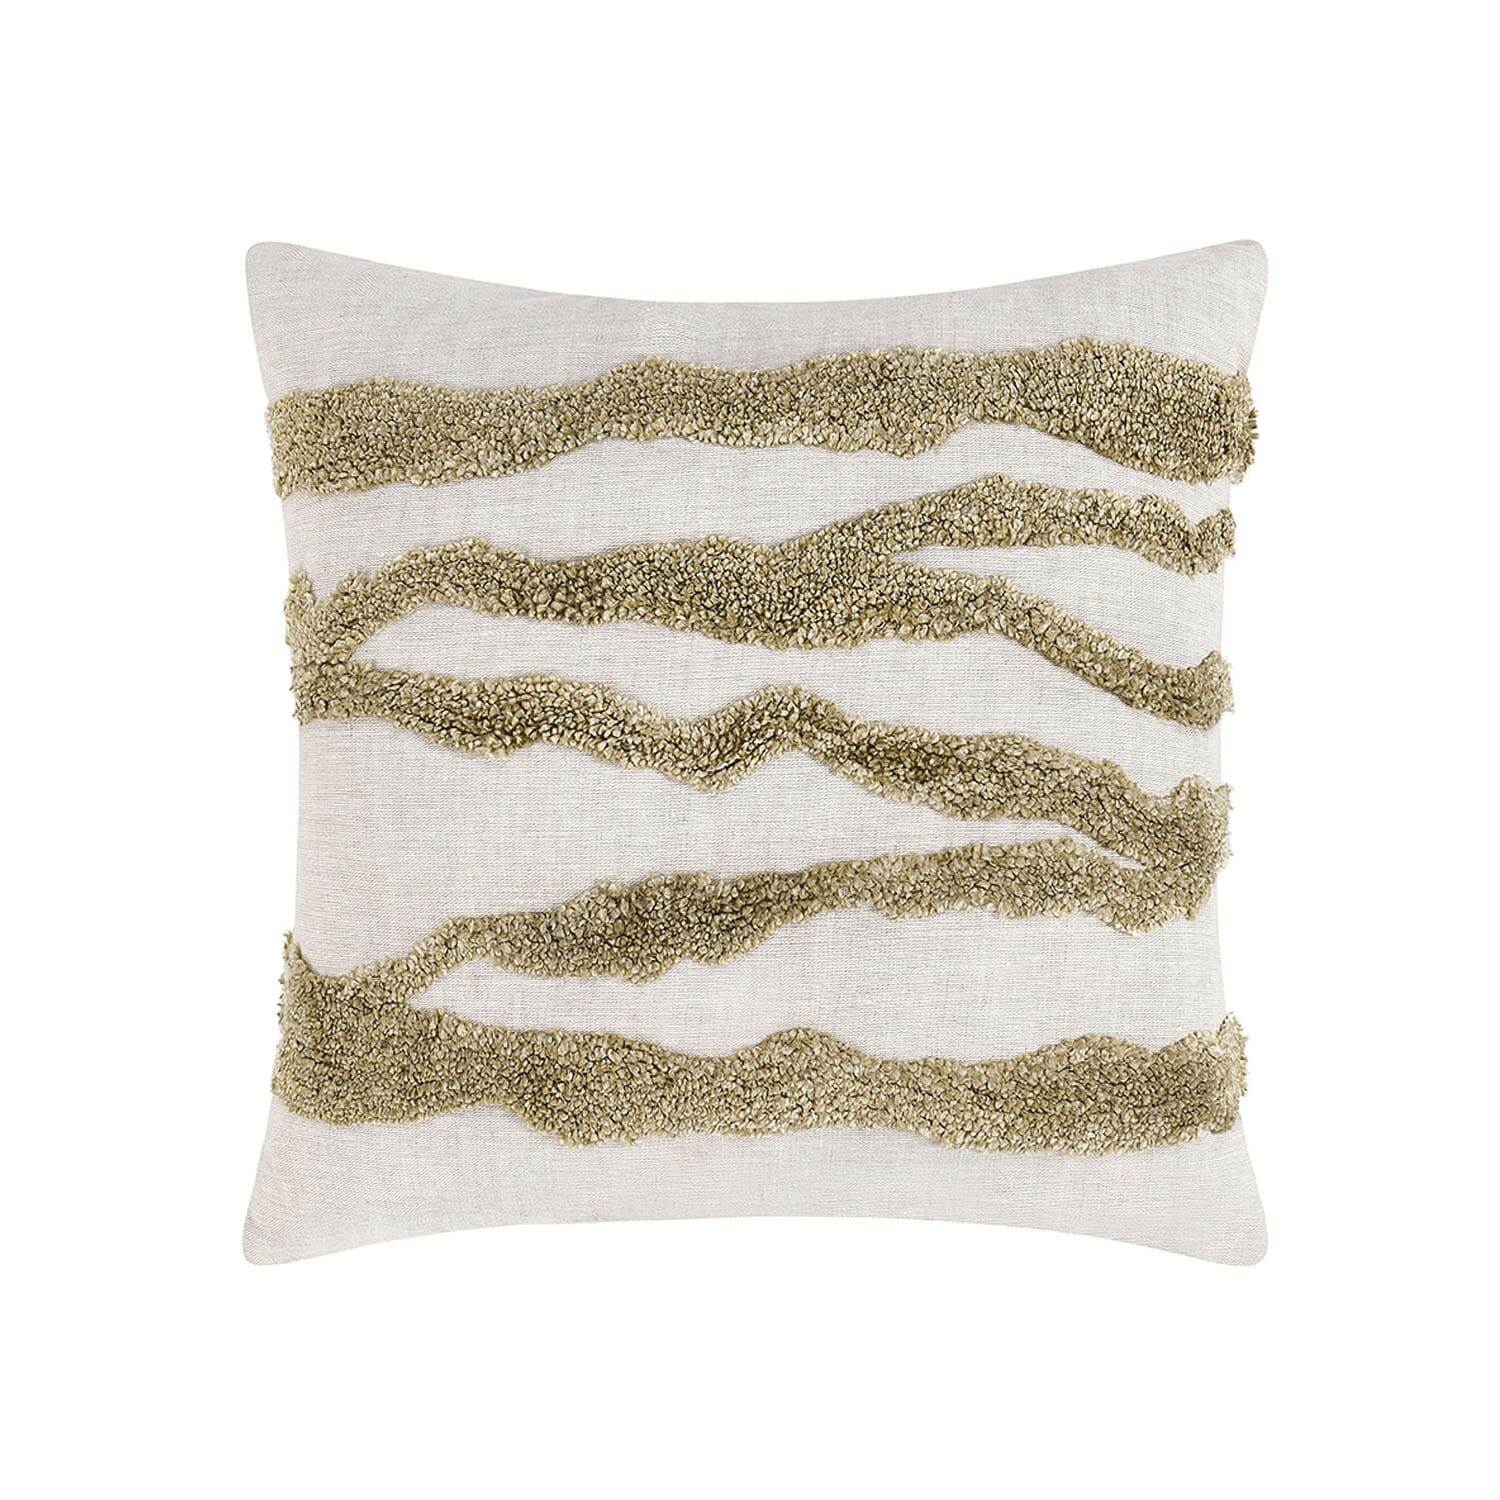 Passage Wheat Green 22x22 Pillow